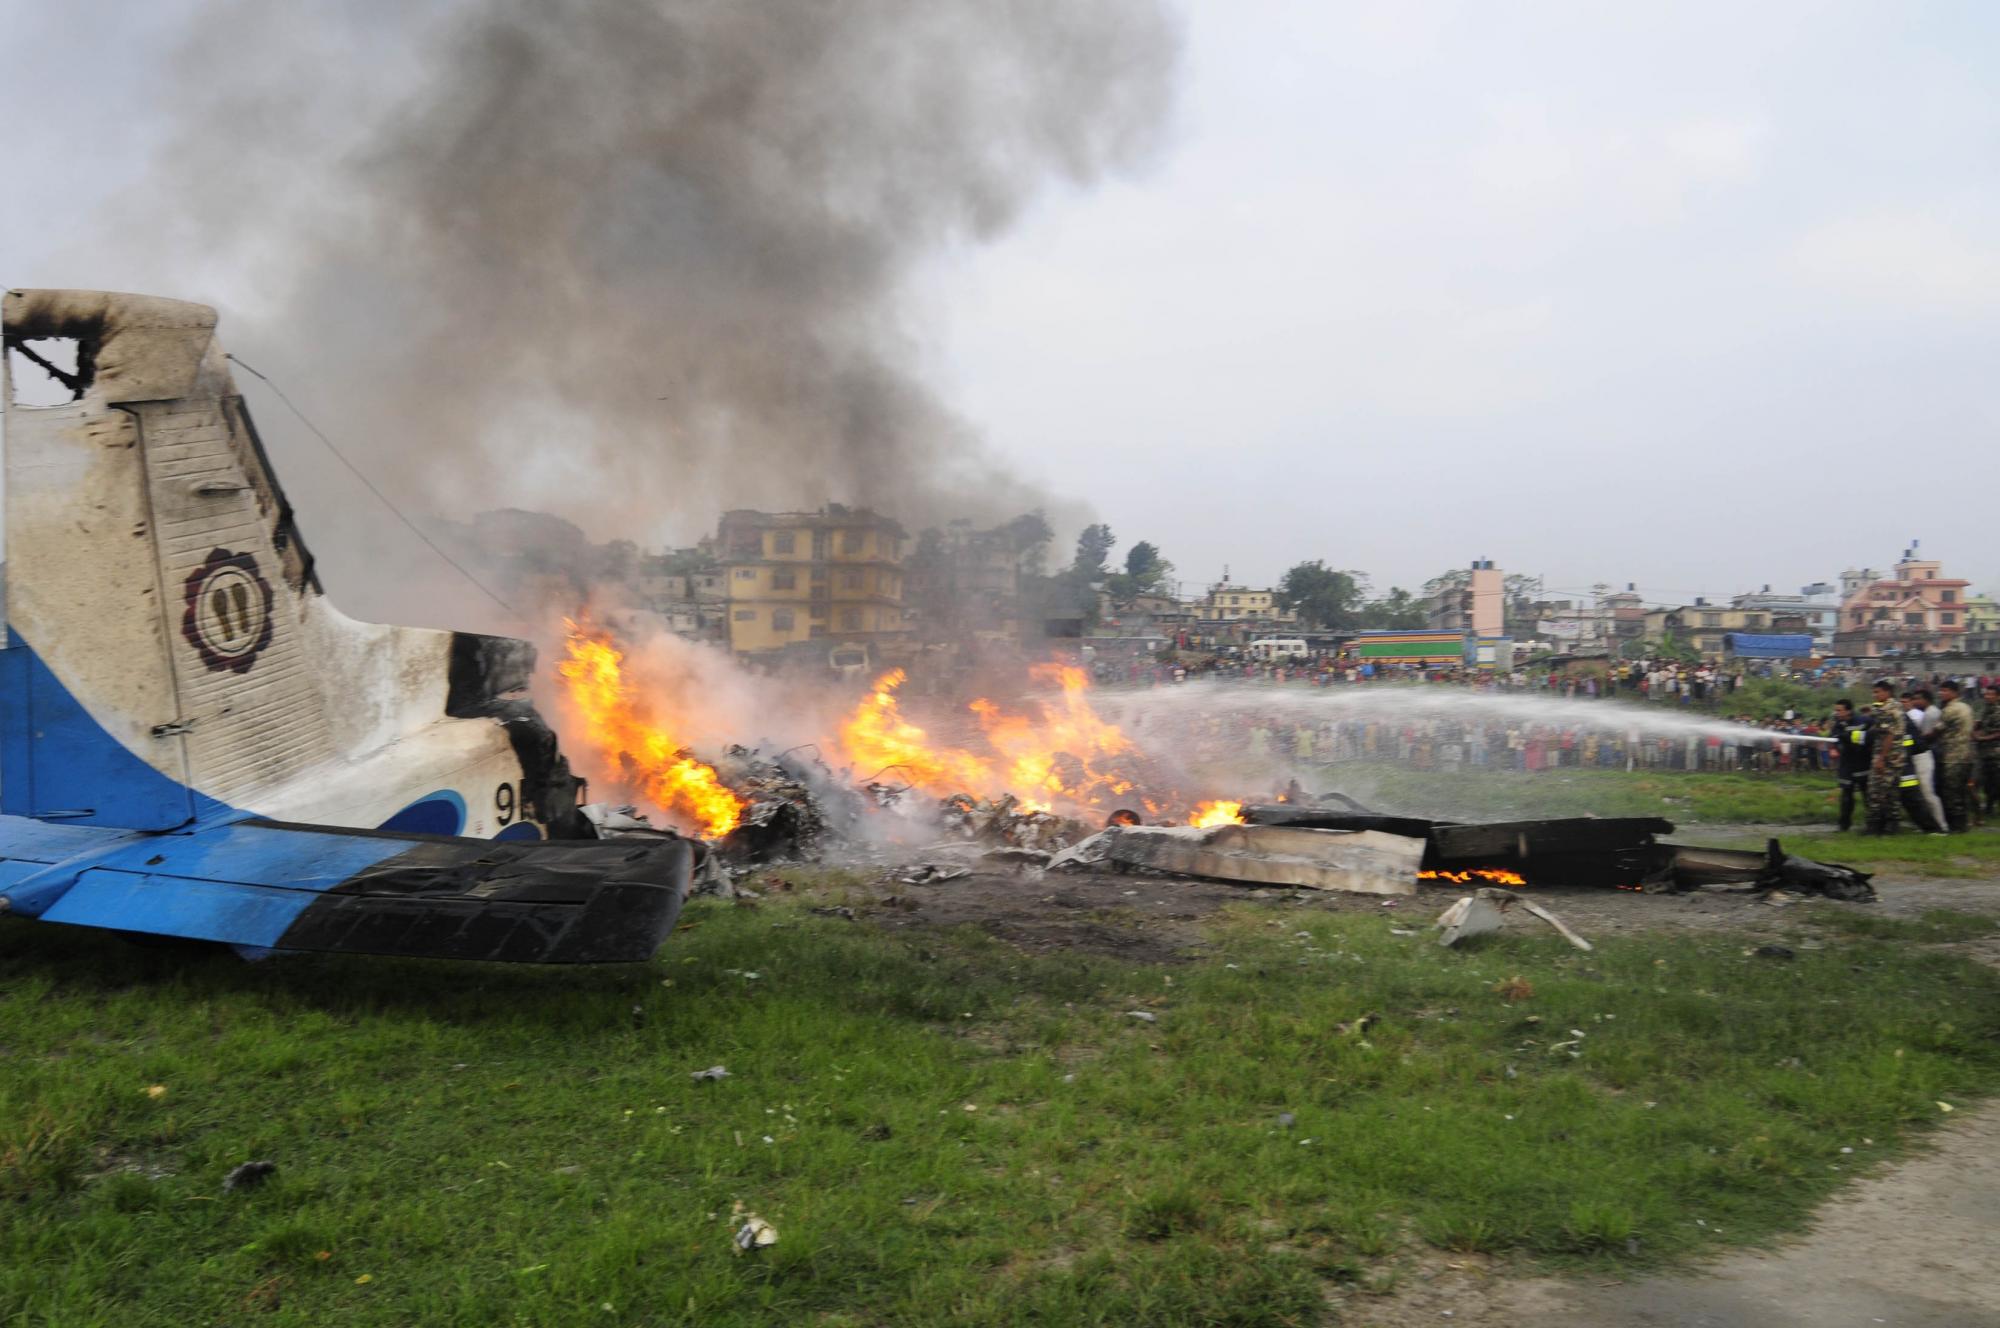 尼泊尔一客机坠毁_尼泊尔客机坠毁_马航mh17客机坠毁最新消息